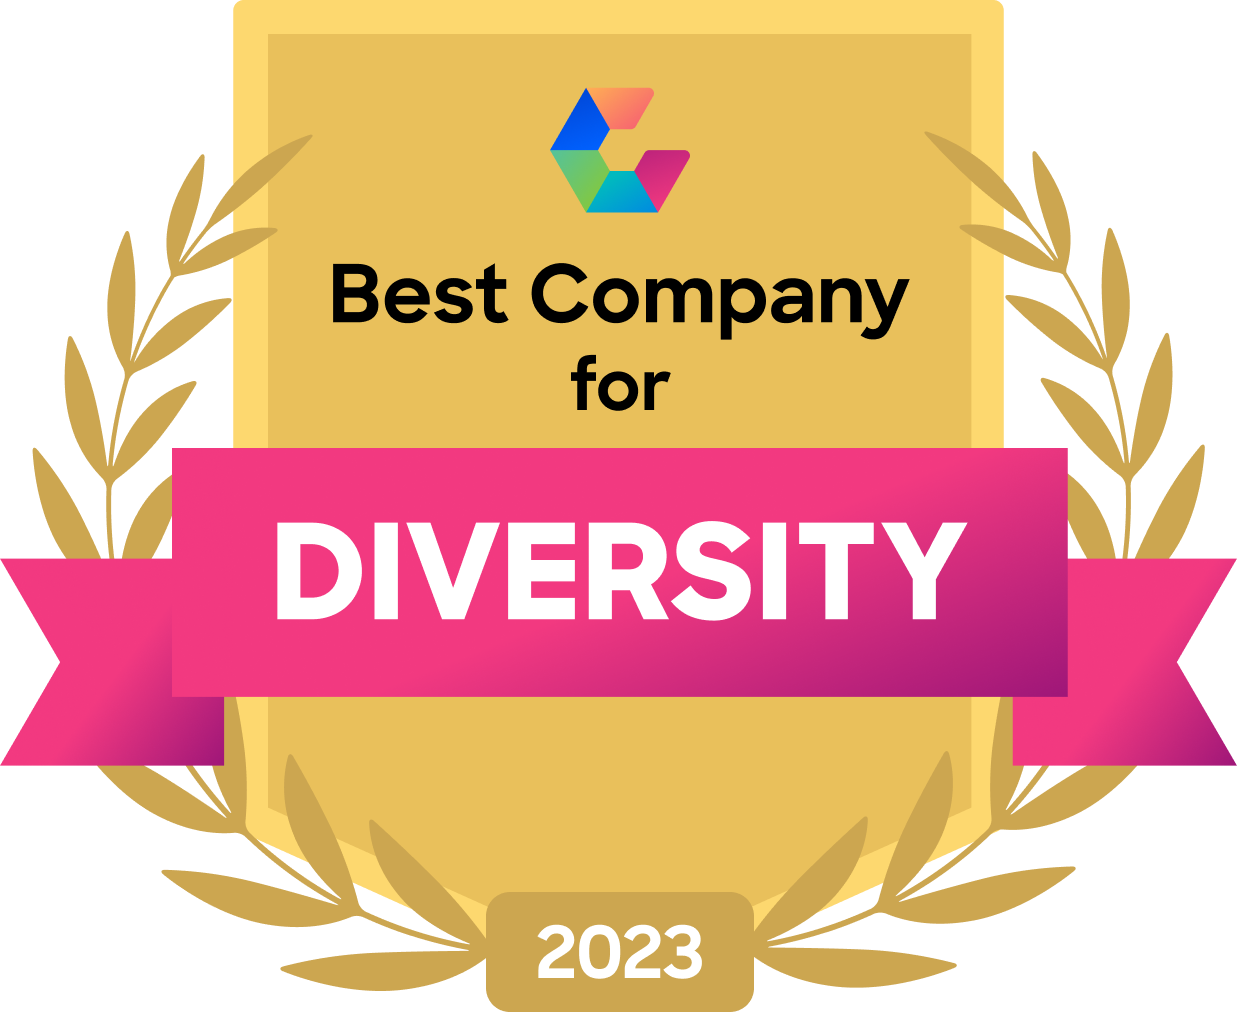 Best company diversity award 2023